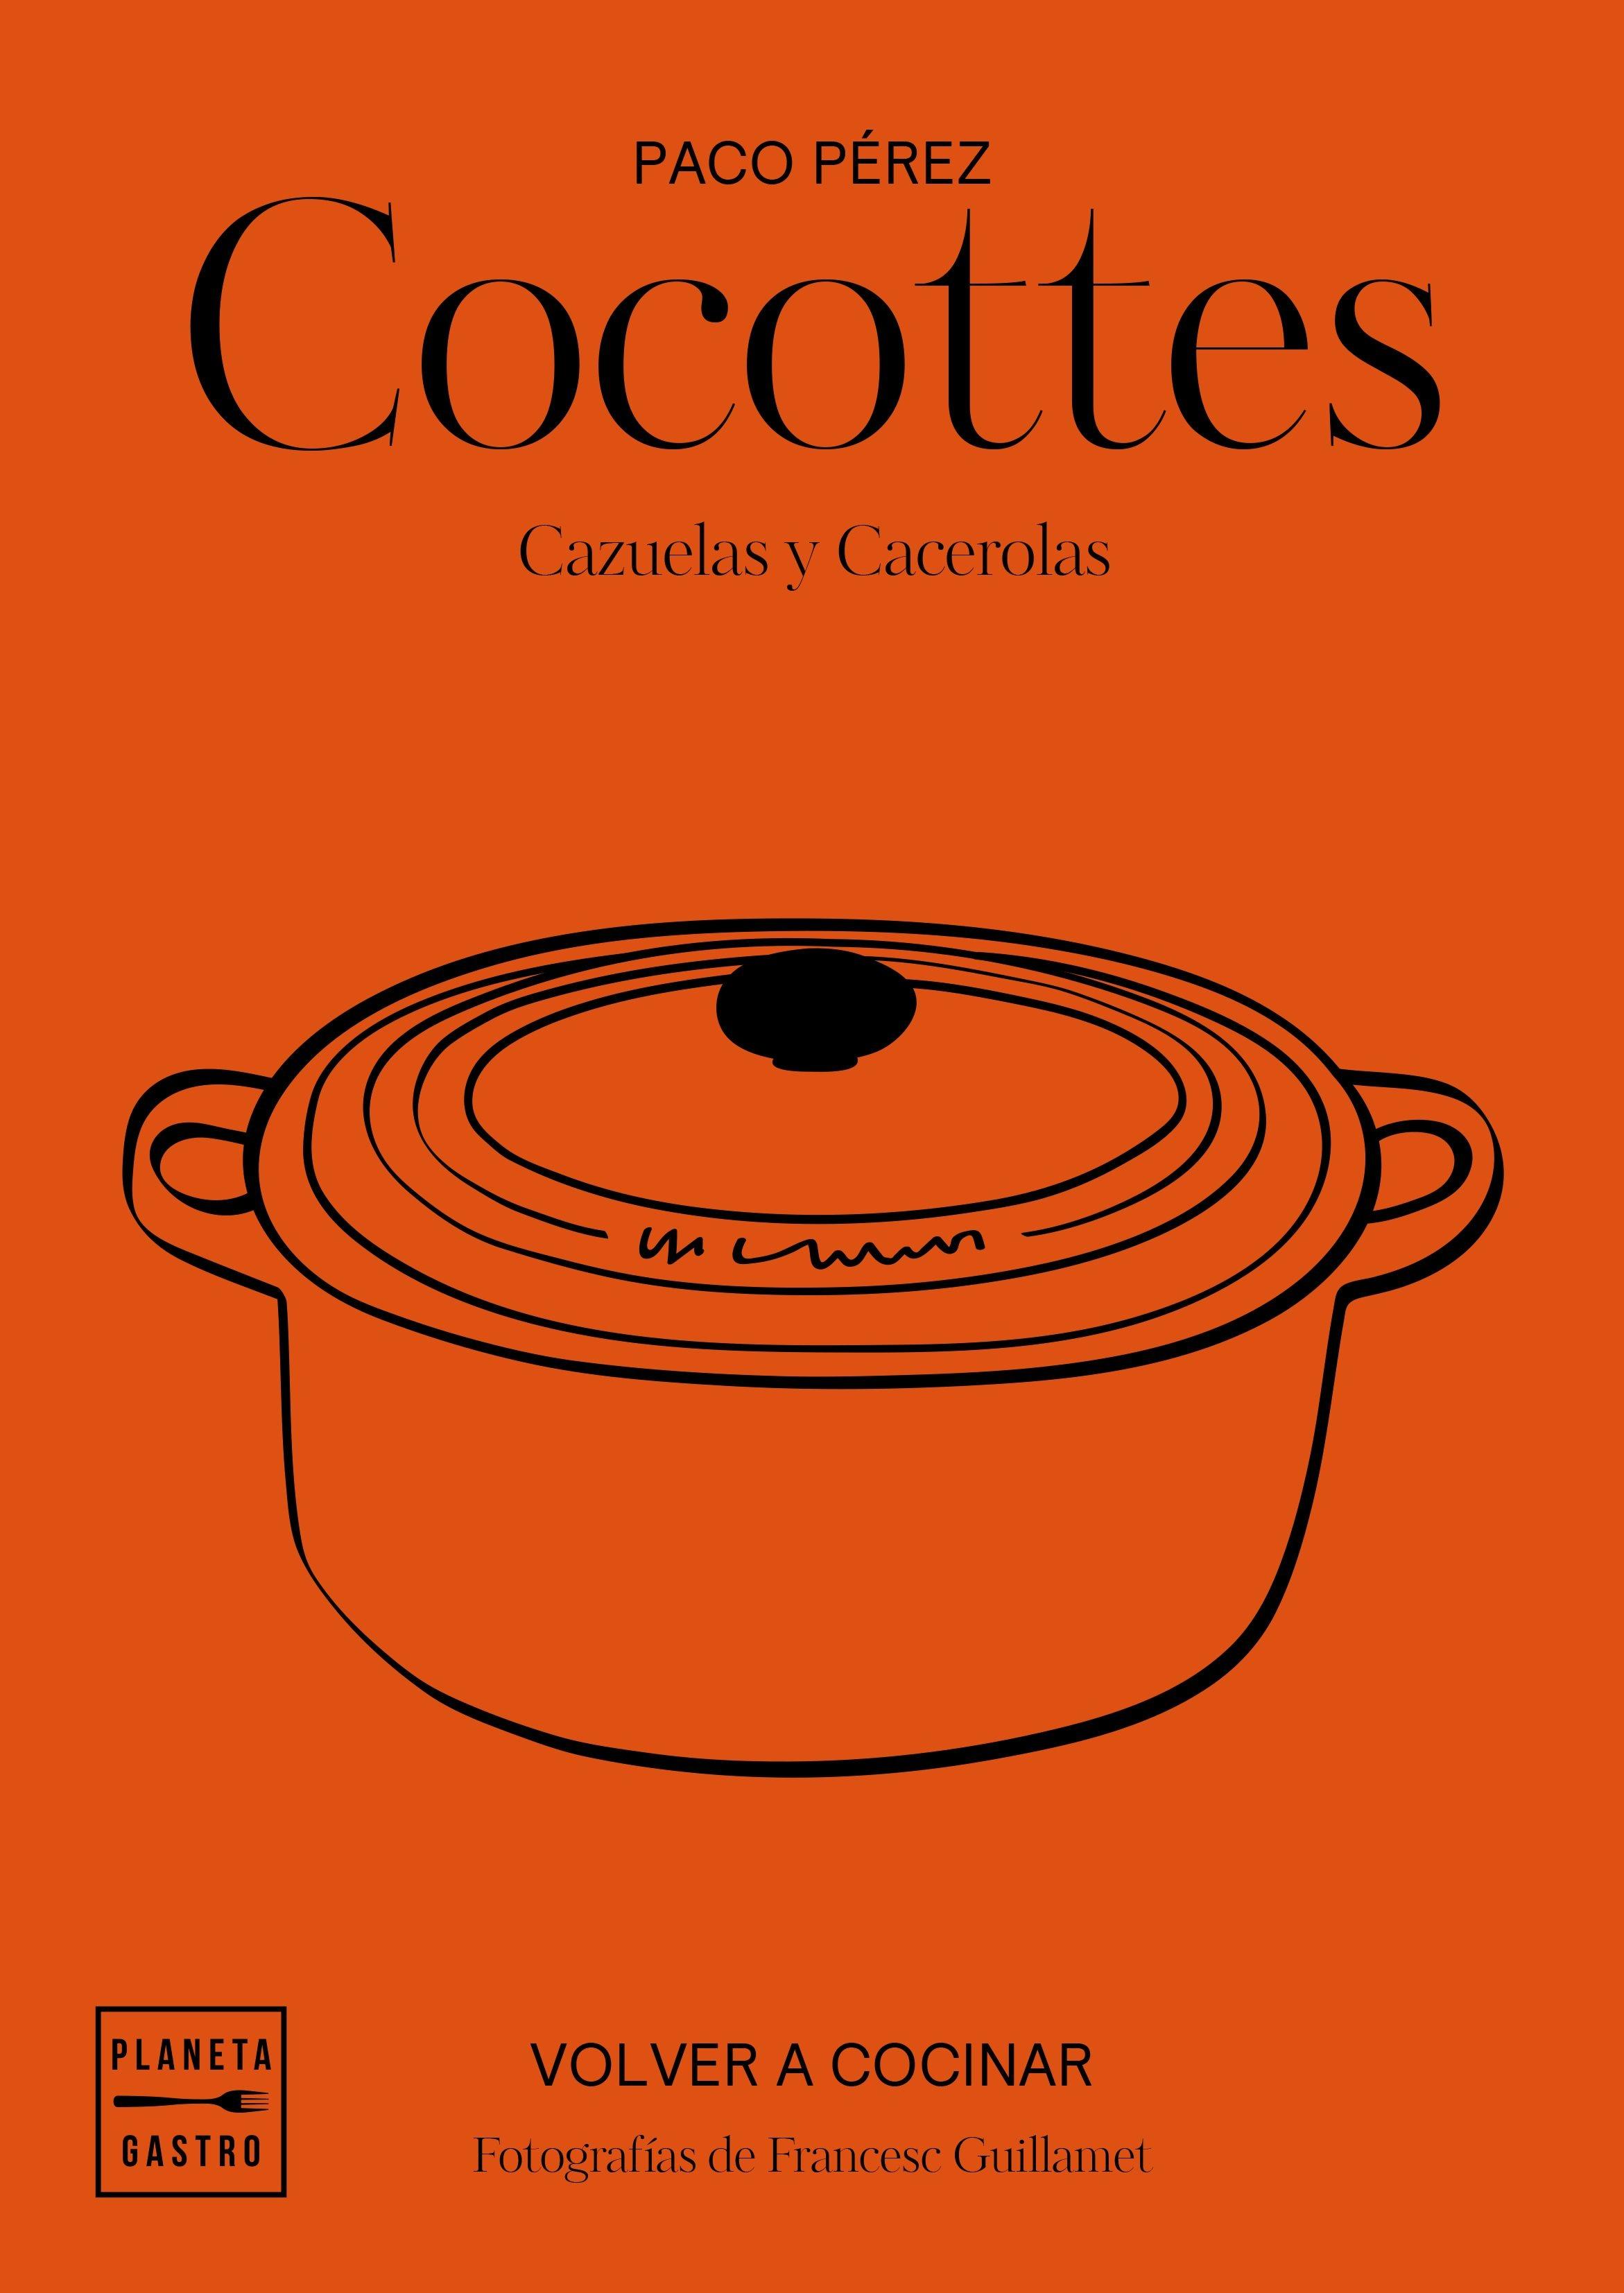 Cocottes "Cazuelas y cacerolas". 